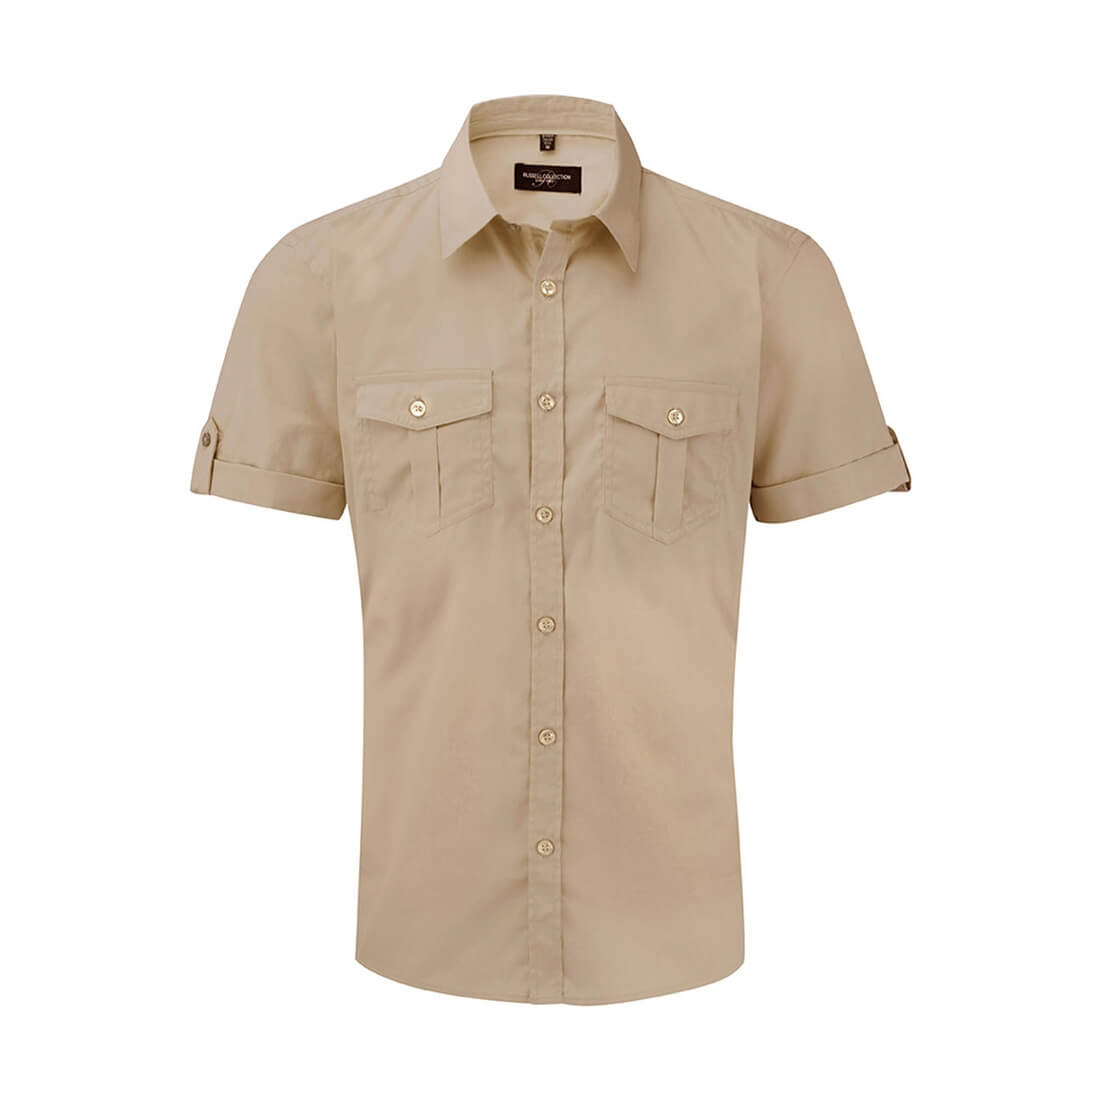 Roll Sleeve Shirt - Les vêtements de protection